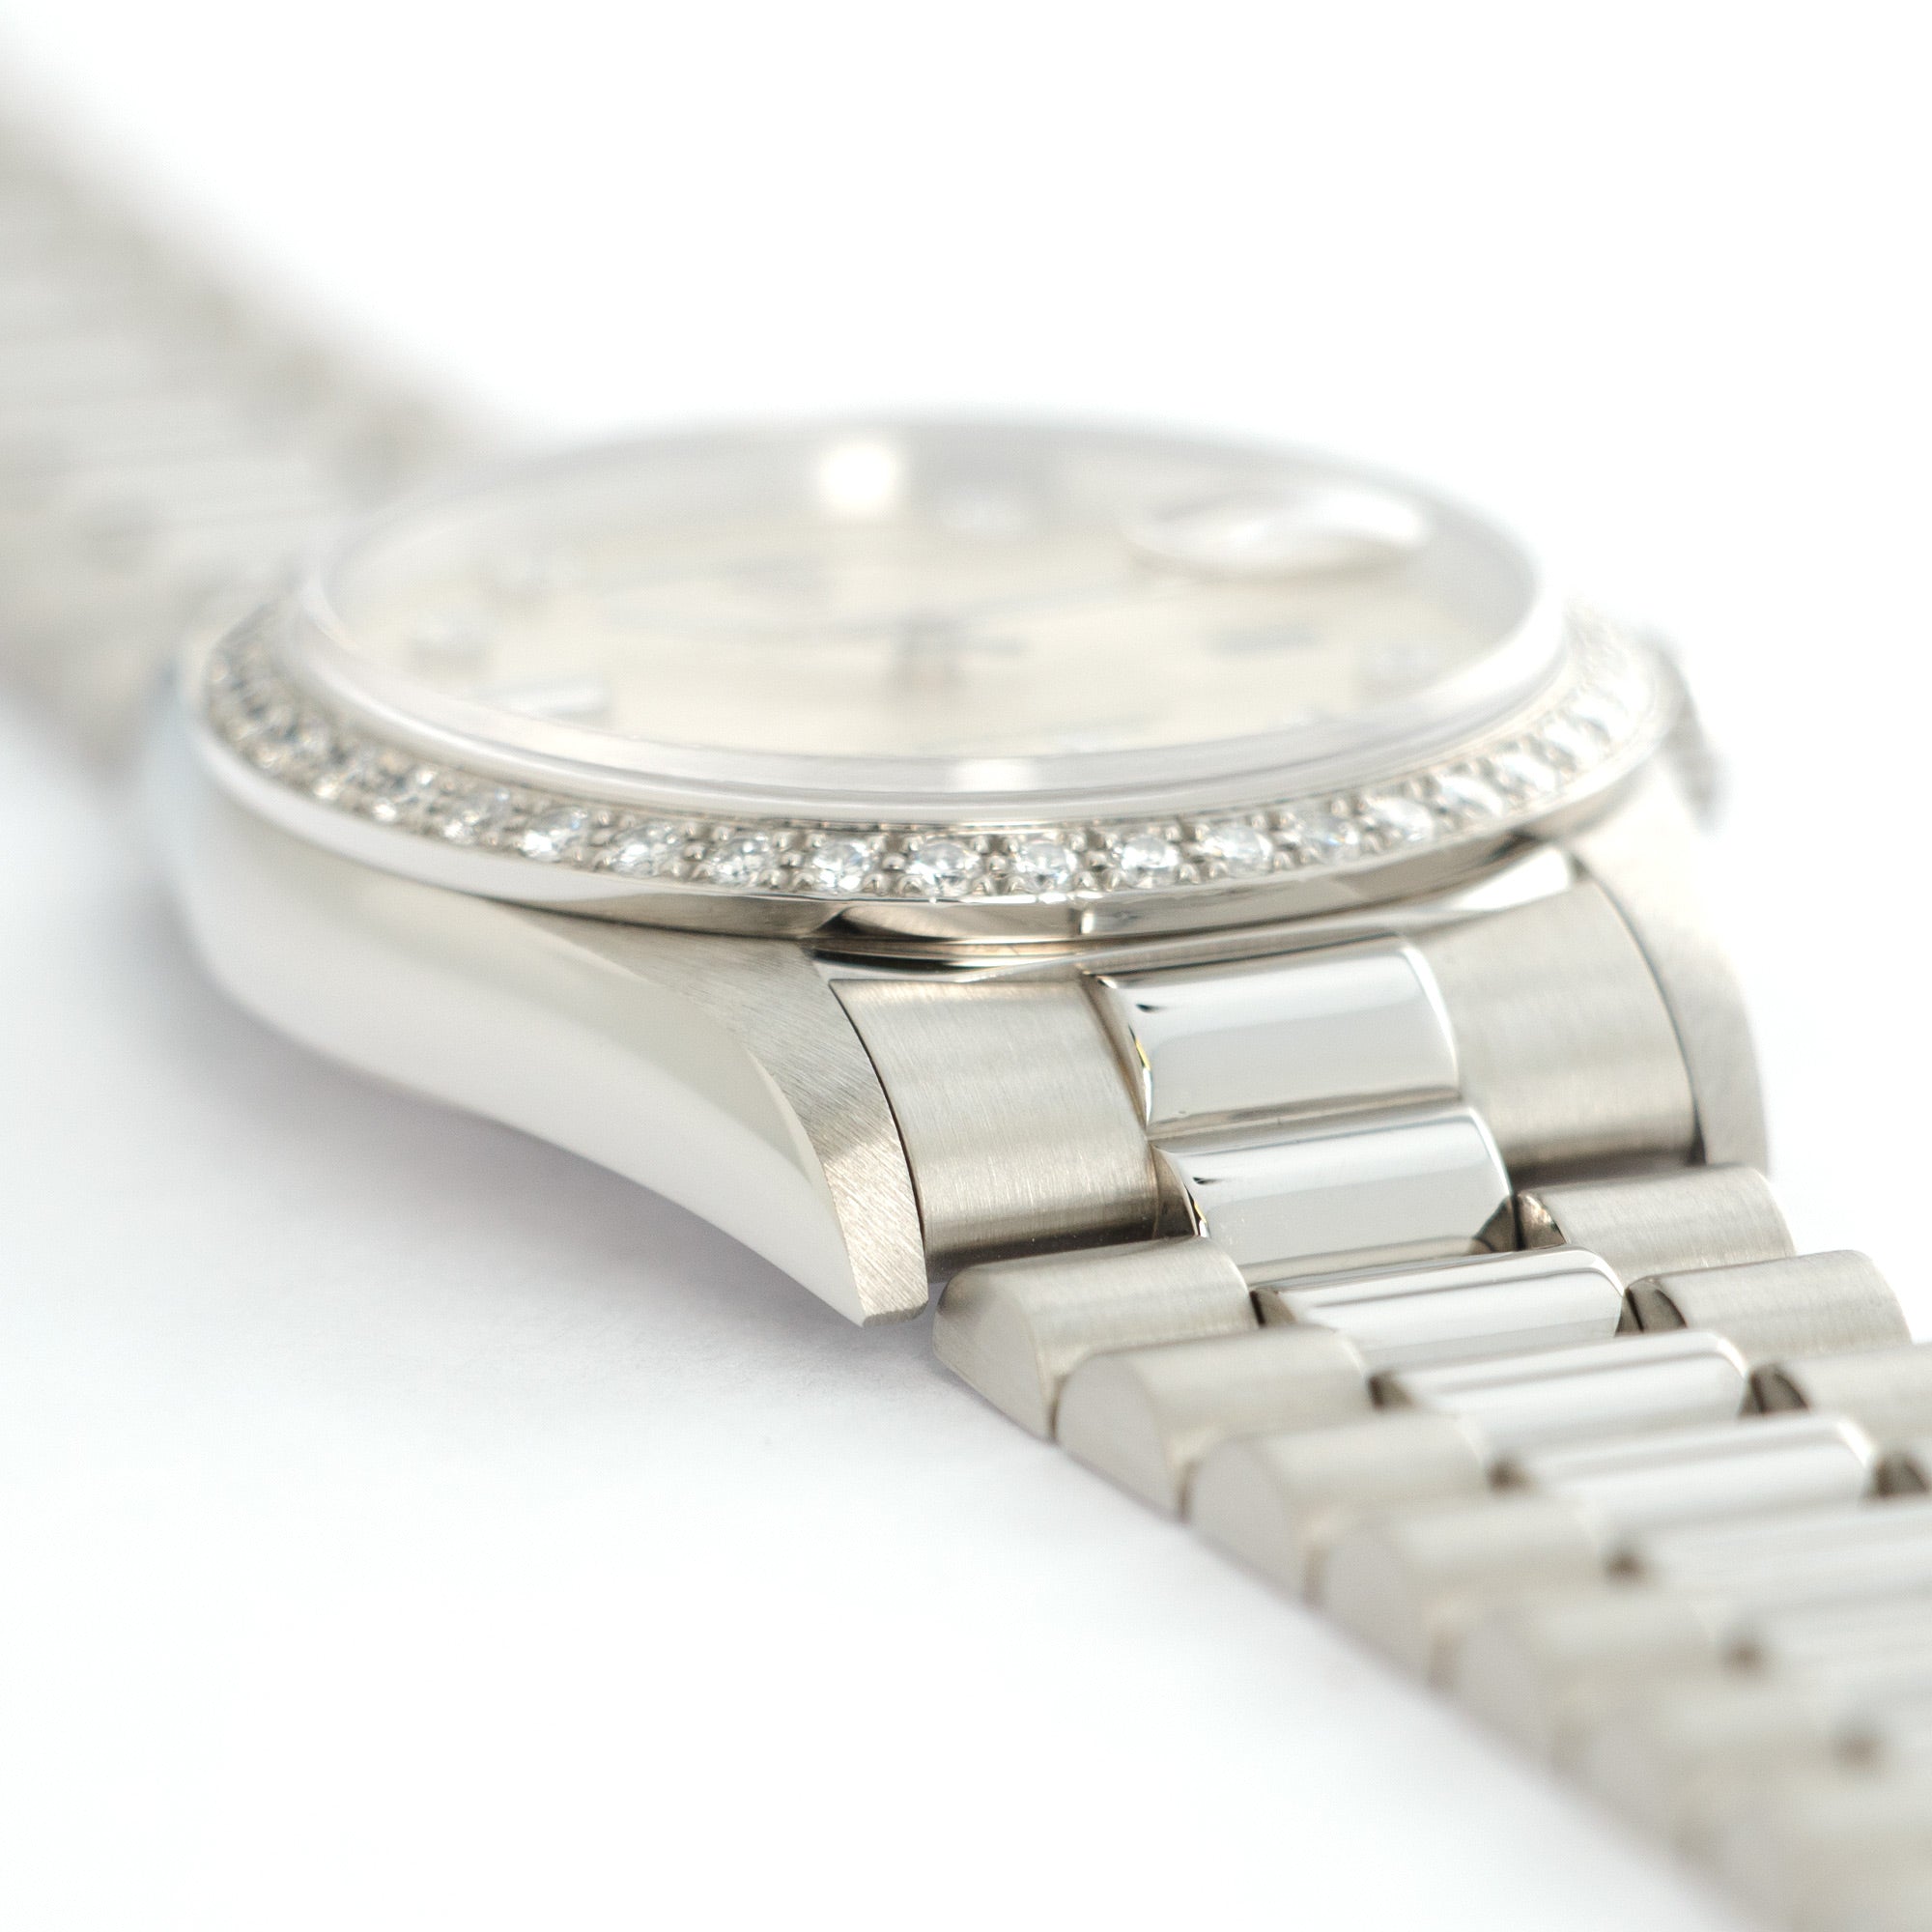 Rolex - Rolex Platinum Day-Date Diamond Watch Ref. 18346 - The Keystone Watches